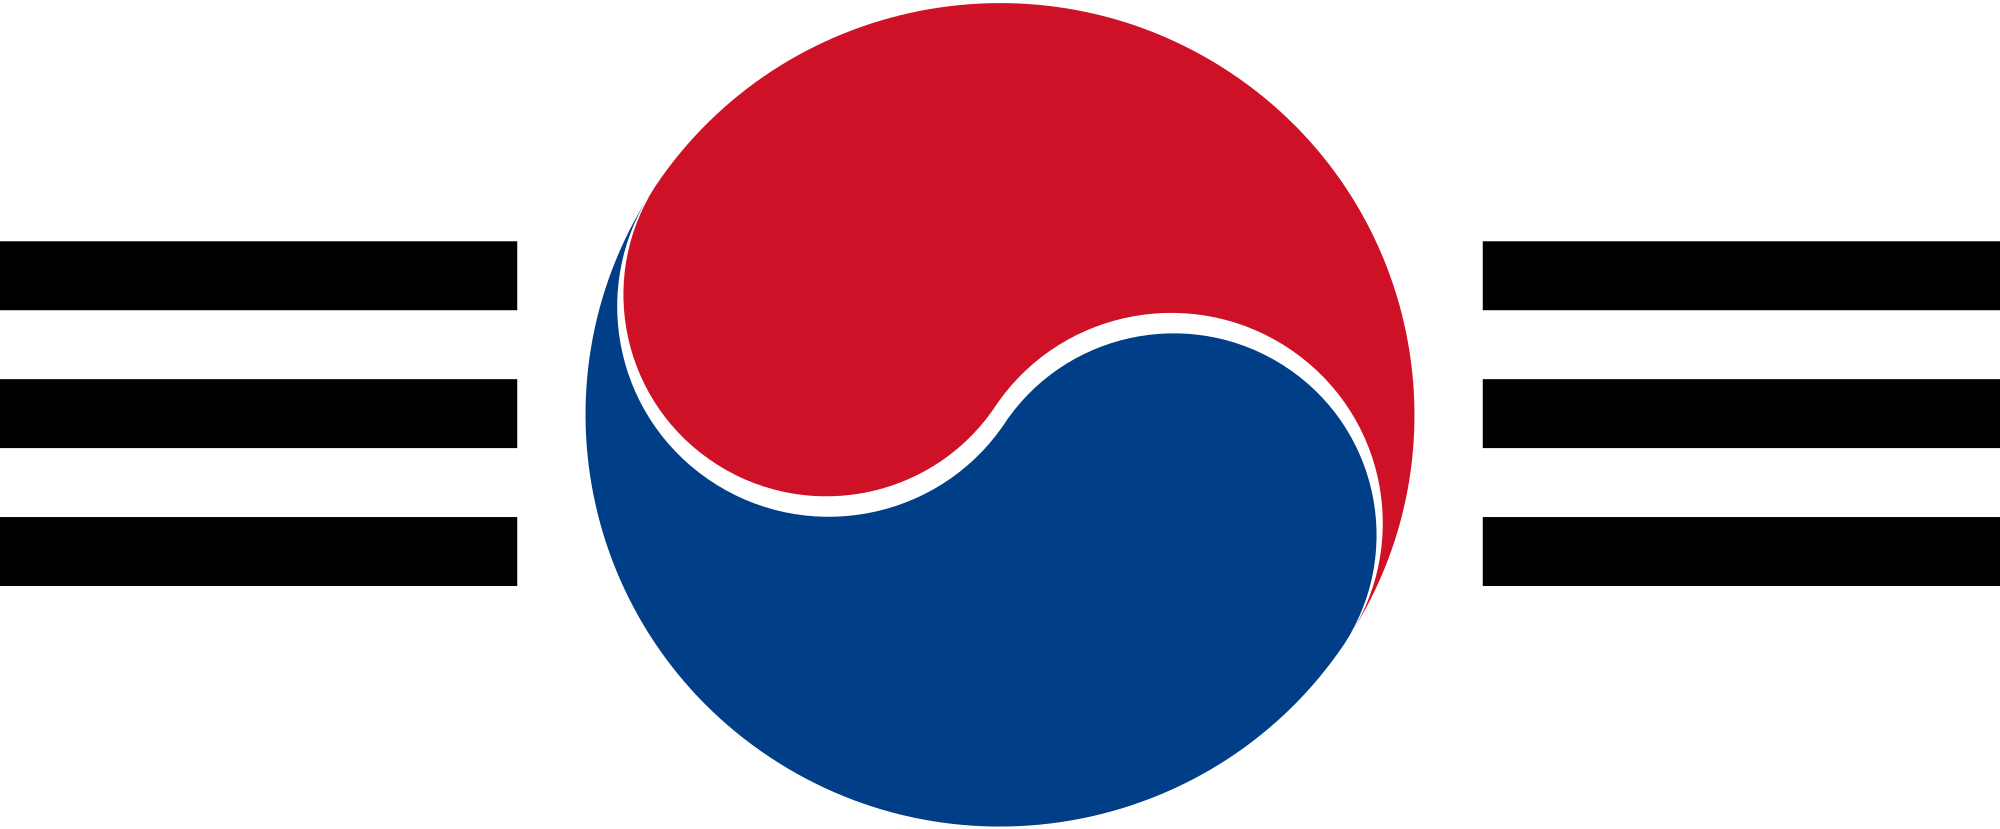 Open - Republic Of Korea Air Force Symbol (2000x829)